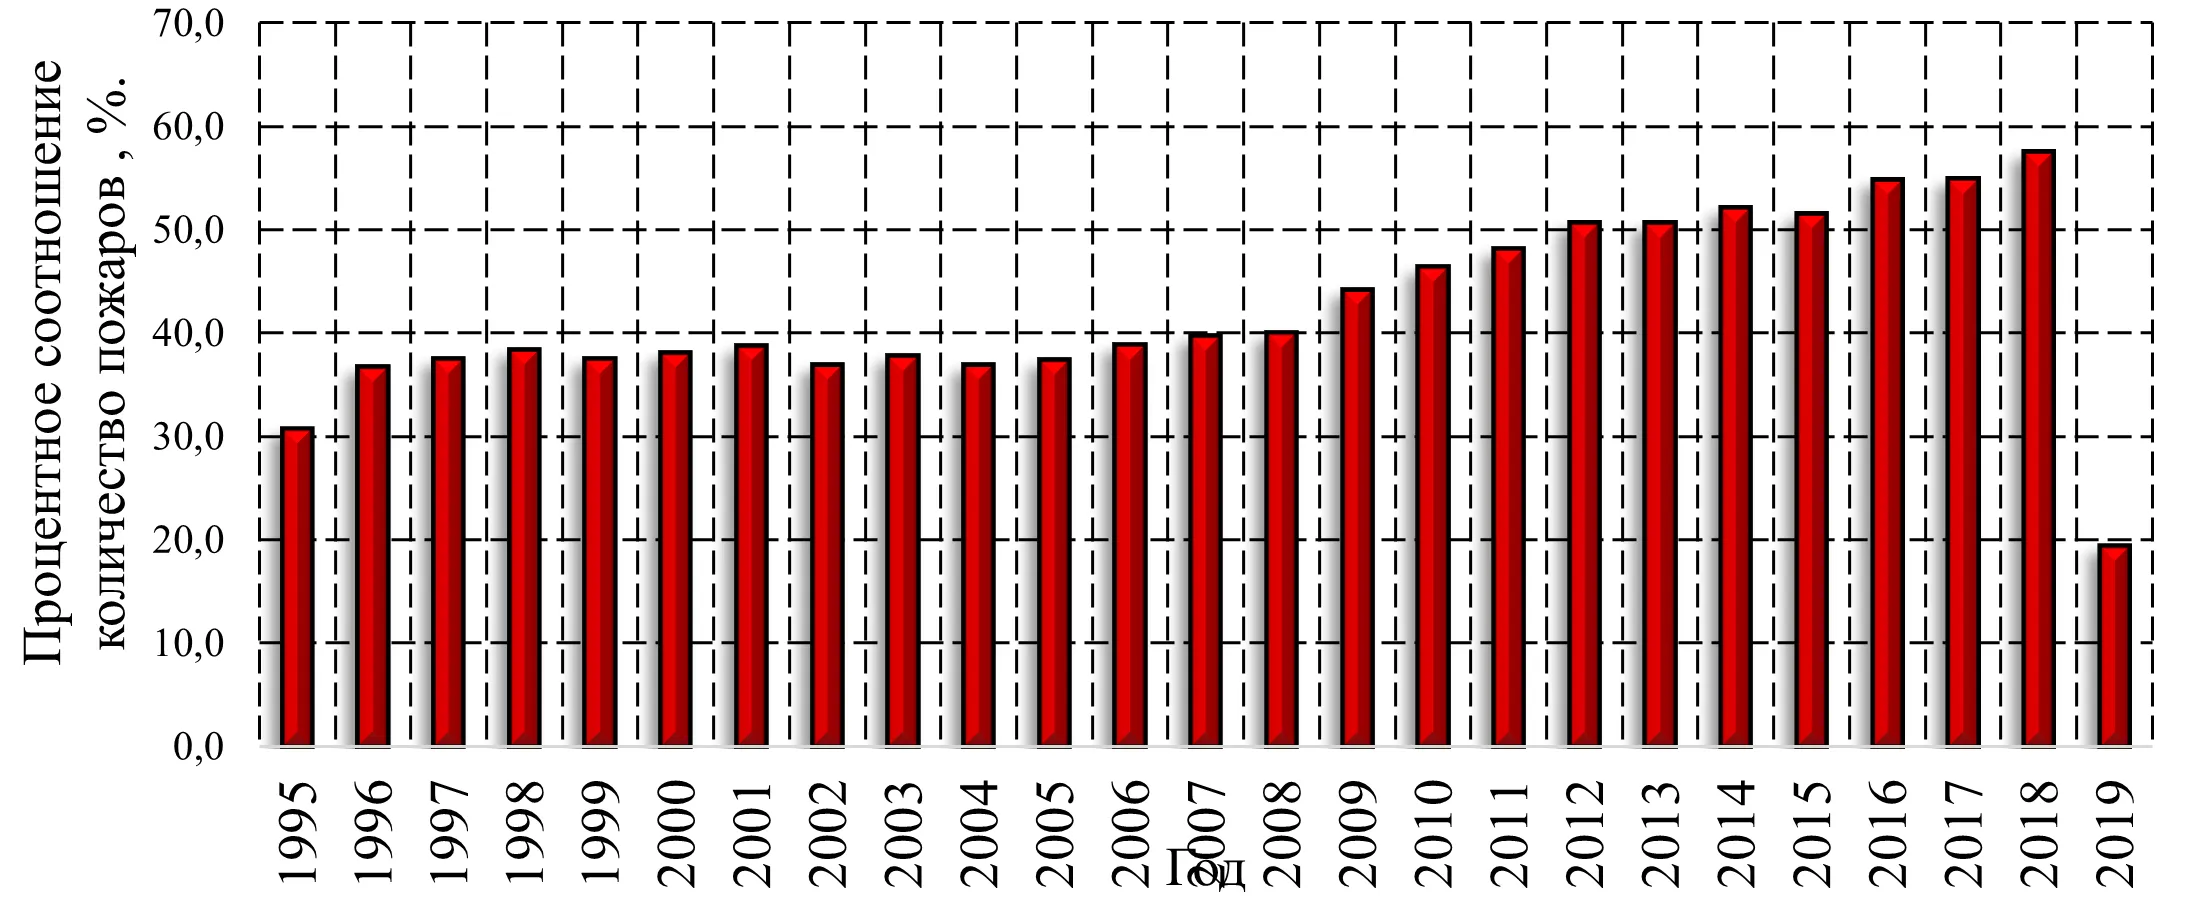 Гистограмма распределения процентного соотношения количества пожаров по причине нарушения правил пожарной безопасности к общему количеству пожаров в Российской Федерации с 1995 по 2019 года